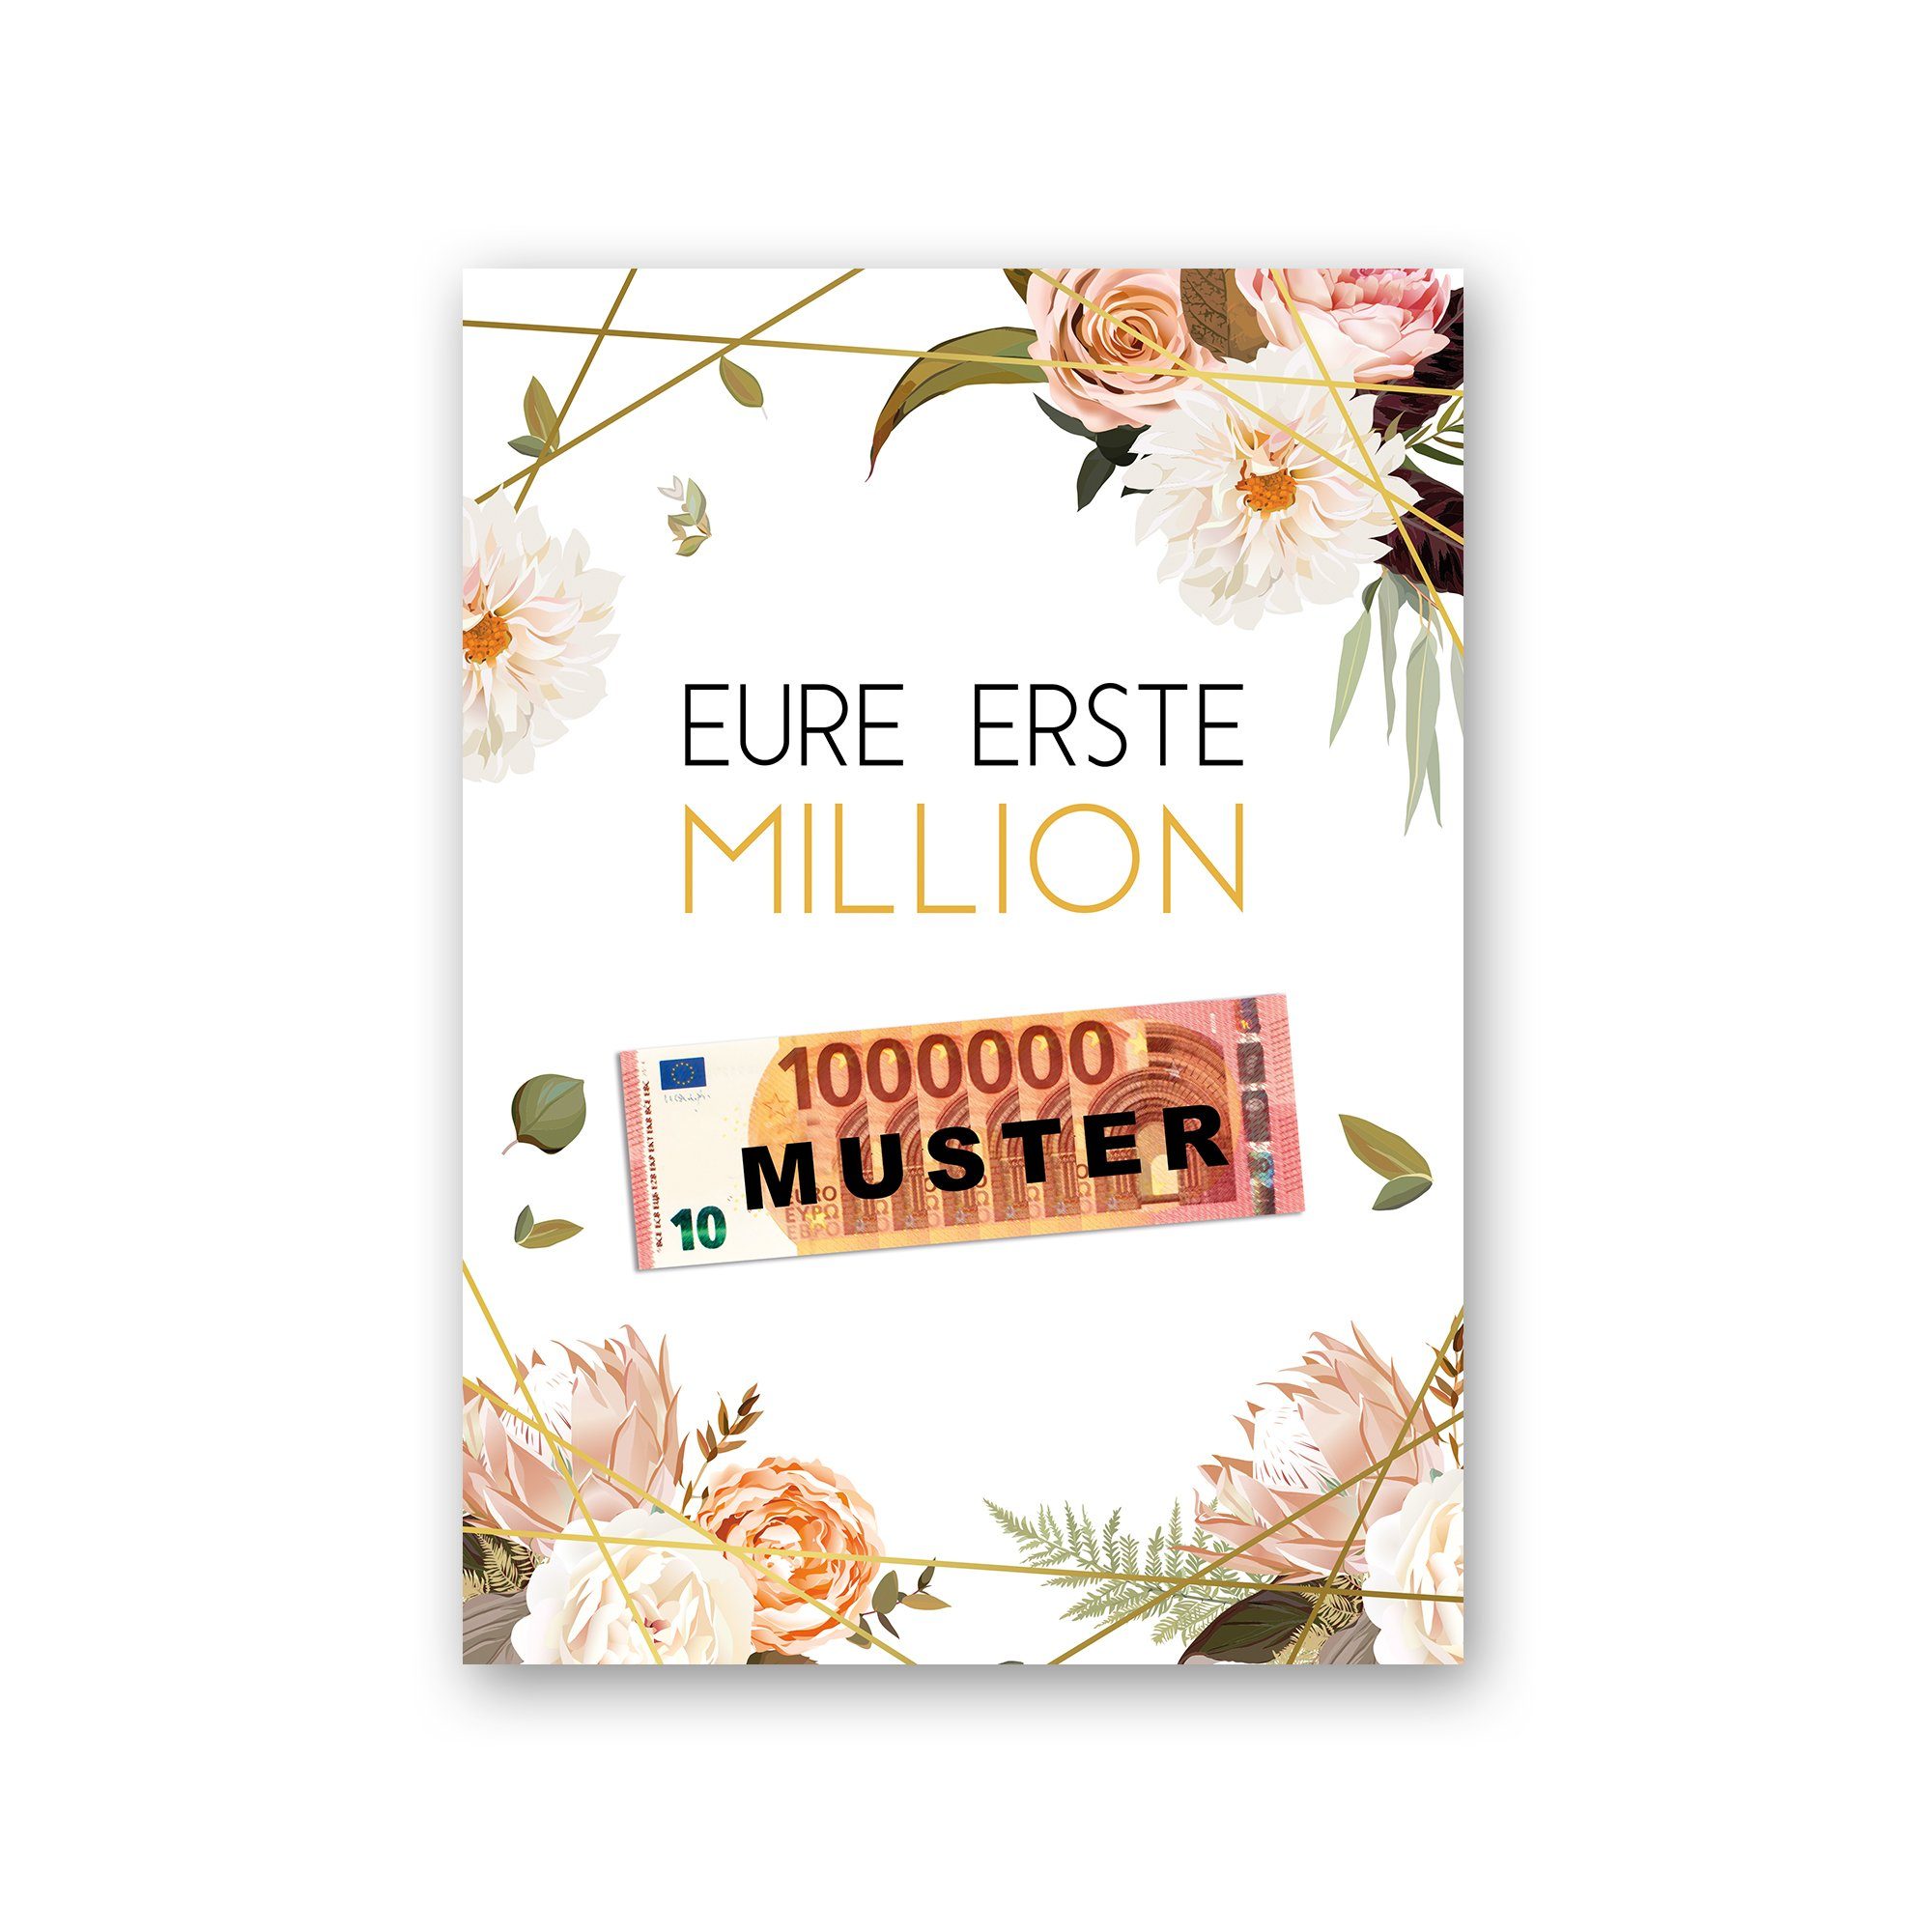 Kreative Feder Poster Premium Poster „Eure erste Million“ - Kunstdruck mit Rosen-Design, Blumen, optional mit Rahmen; wahlweise DIN A4 oder DIN A3 weißer Rahmen